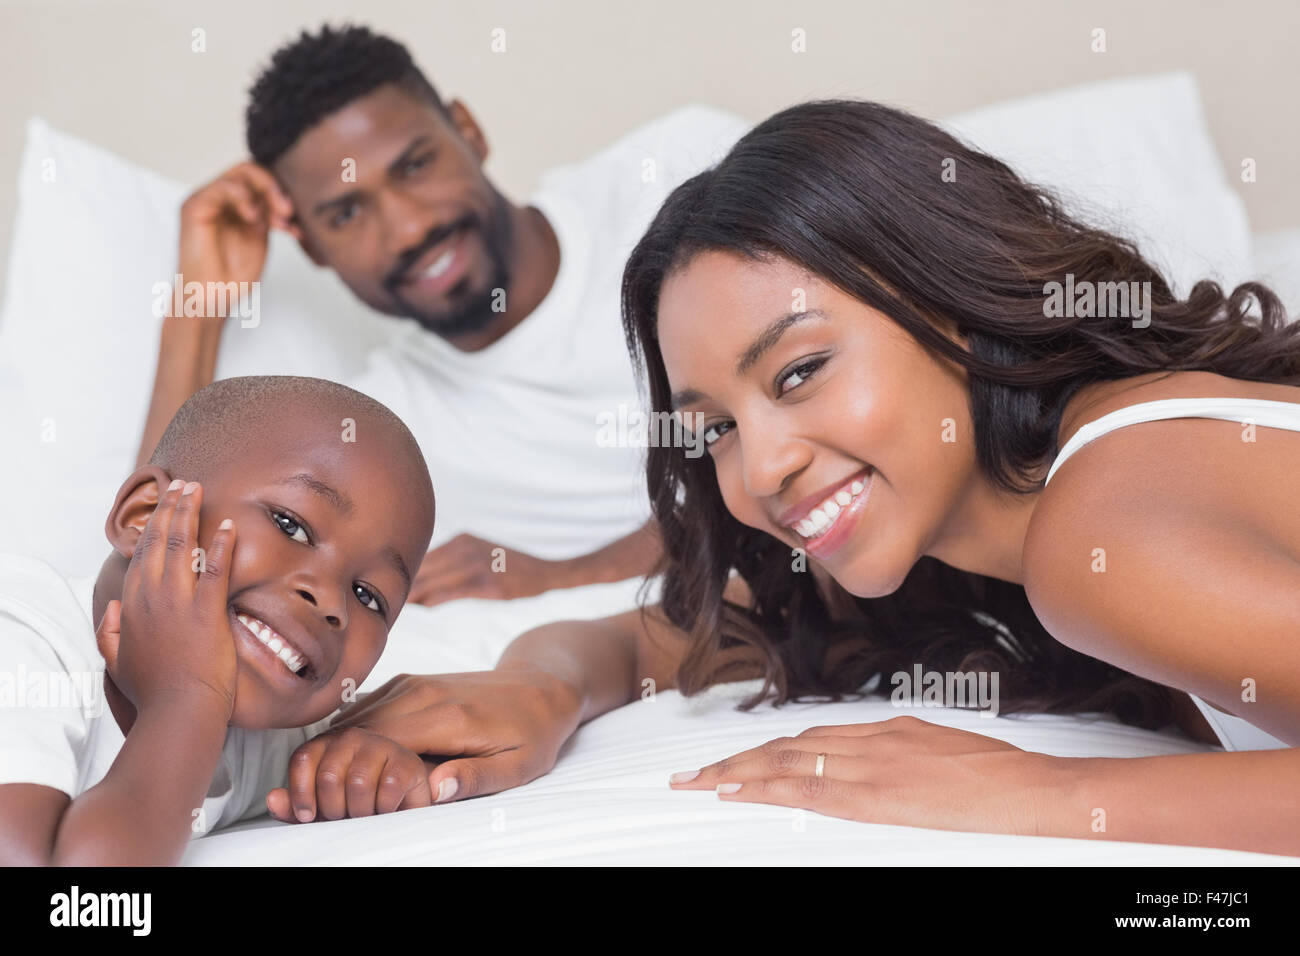 Glückliche Familie auf dem Bett Stockfoto